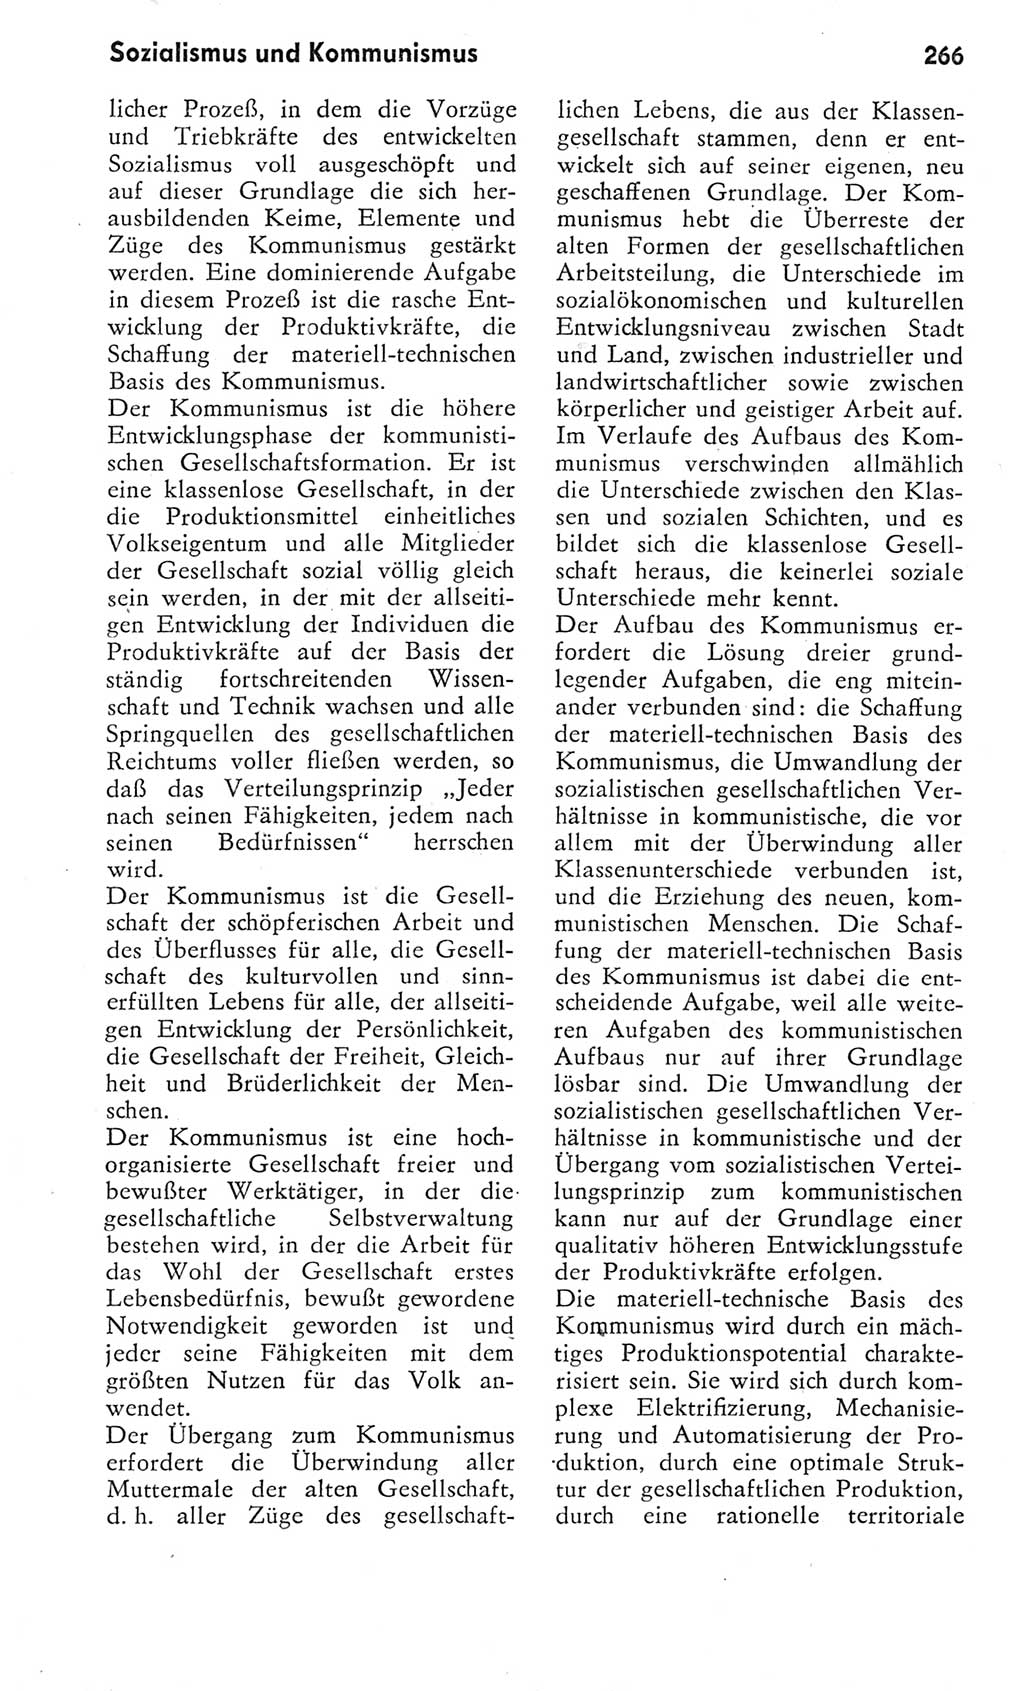 Kleines Wörterbuch der marxistisch-leninistischen Philosophie [Deutsche Demokratische Republik (DDR)] 1975, Seite 266 (Kl. Wb. ML Phil. DDR 1975, S. 266)